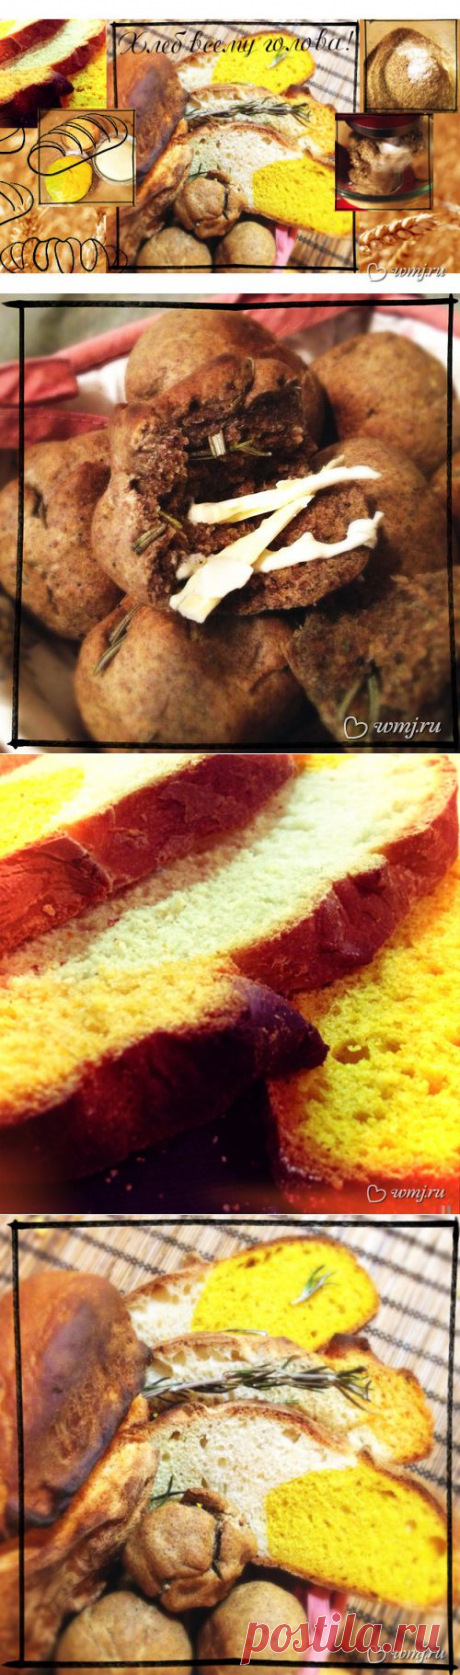 Кружевной, с хрустящей корочкой: печем вместе домашний хлеб | www.wmj.ru